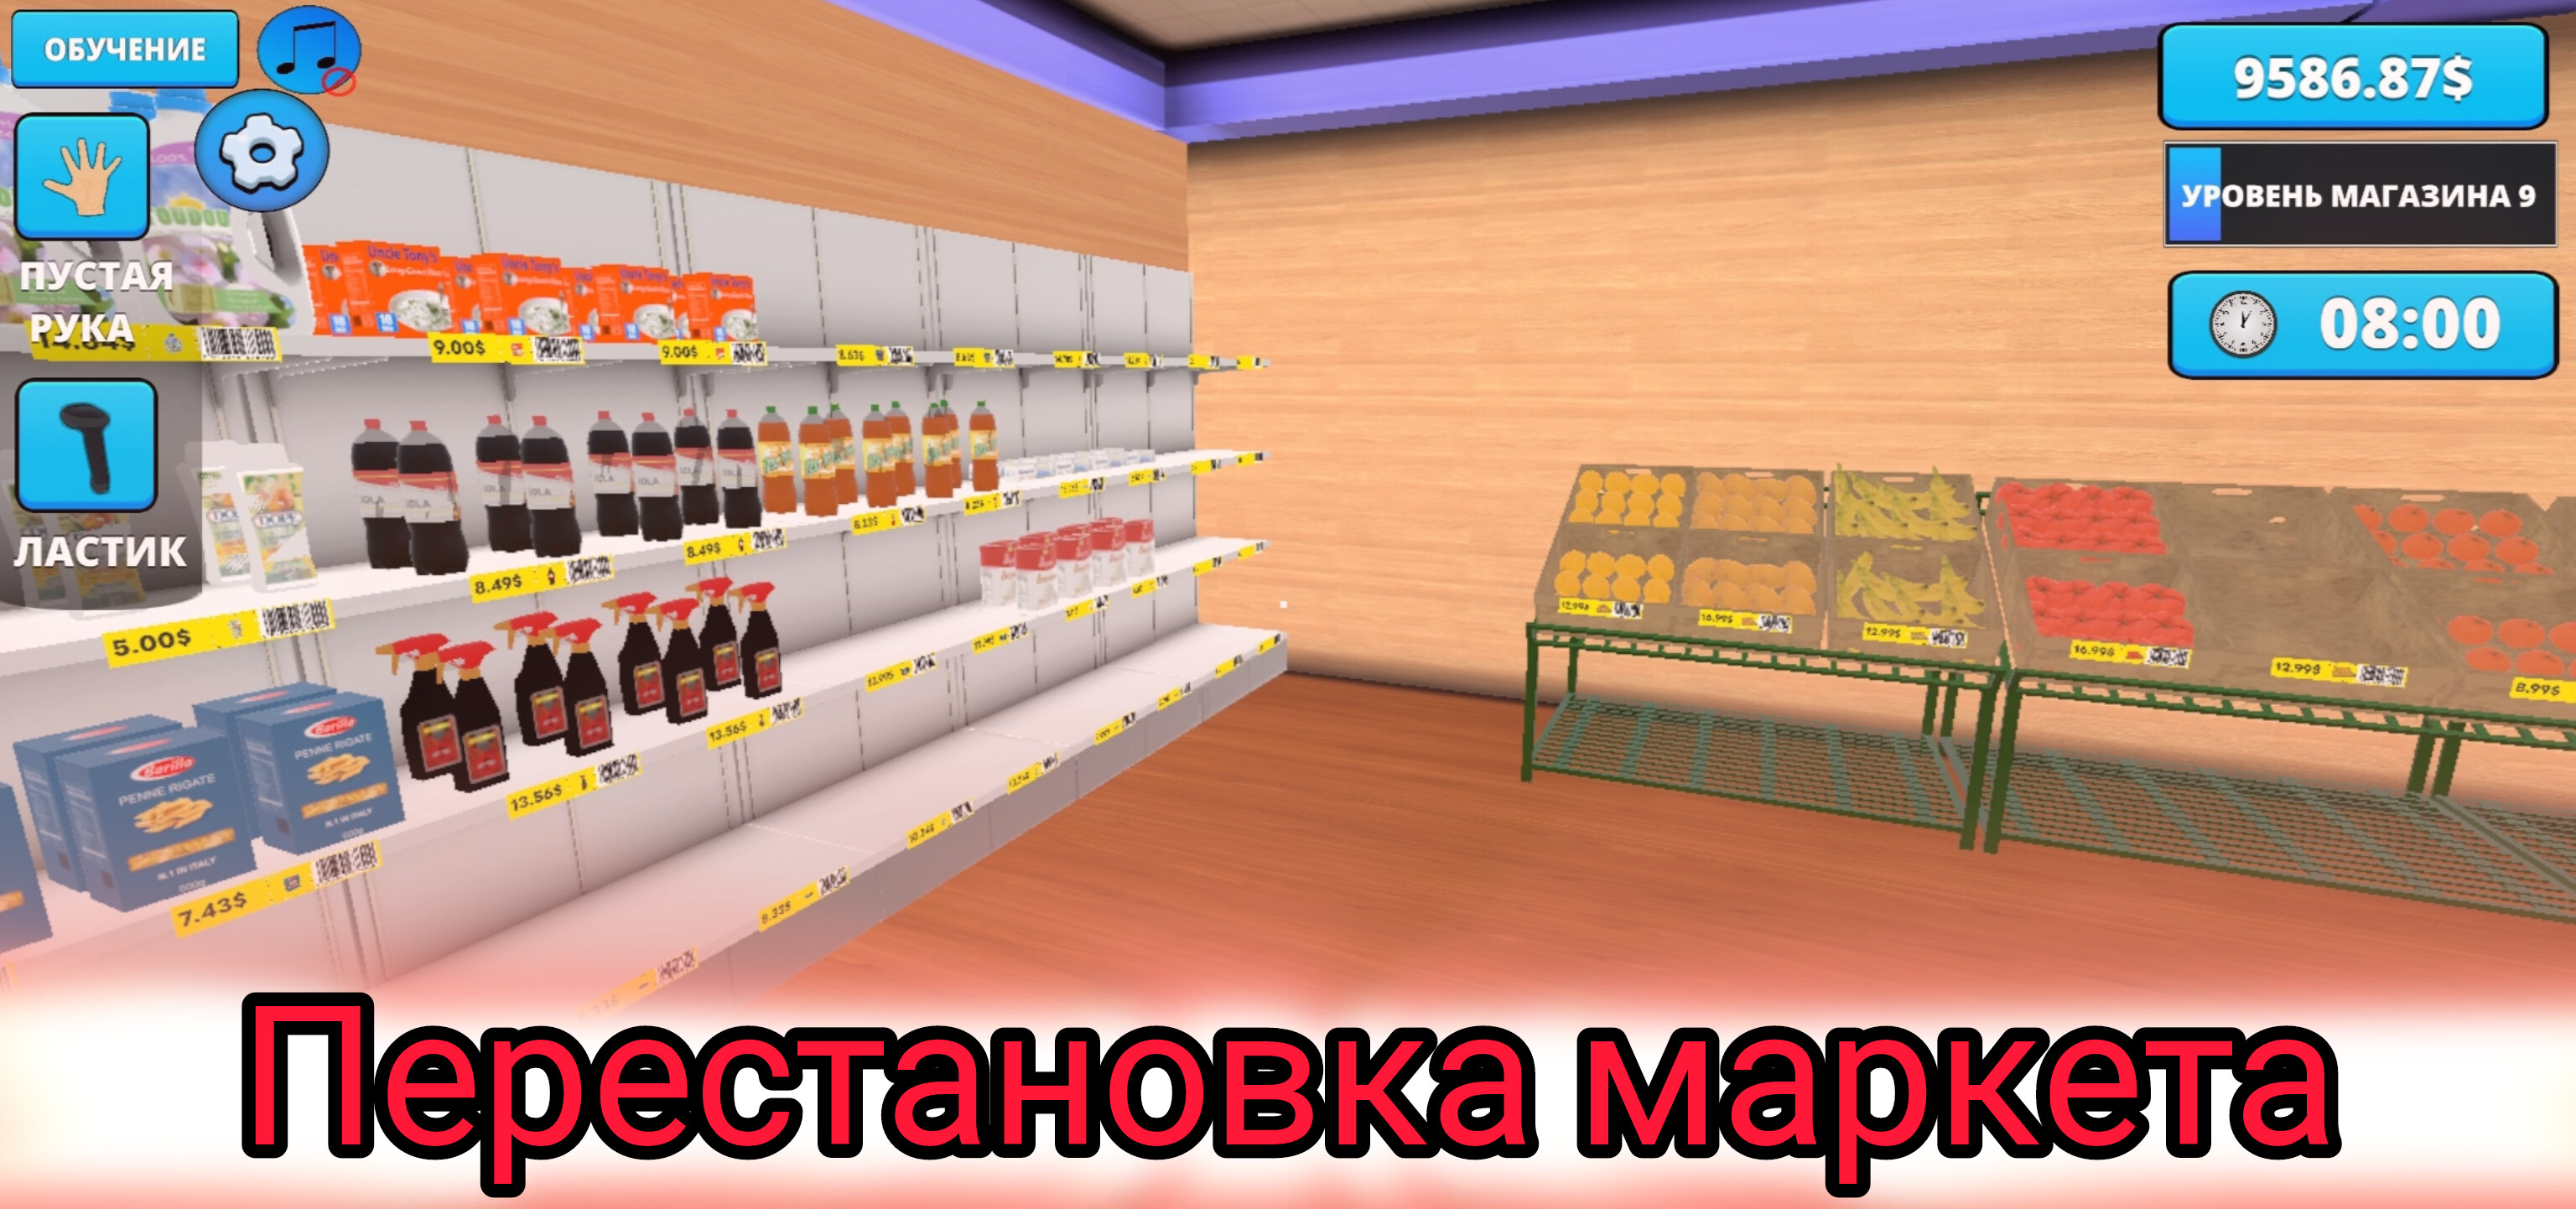 Перестановка в маркете - Retail Store Simulator